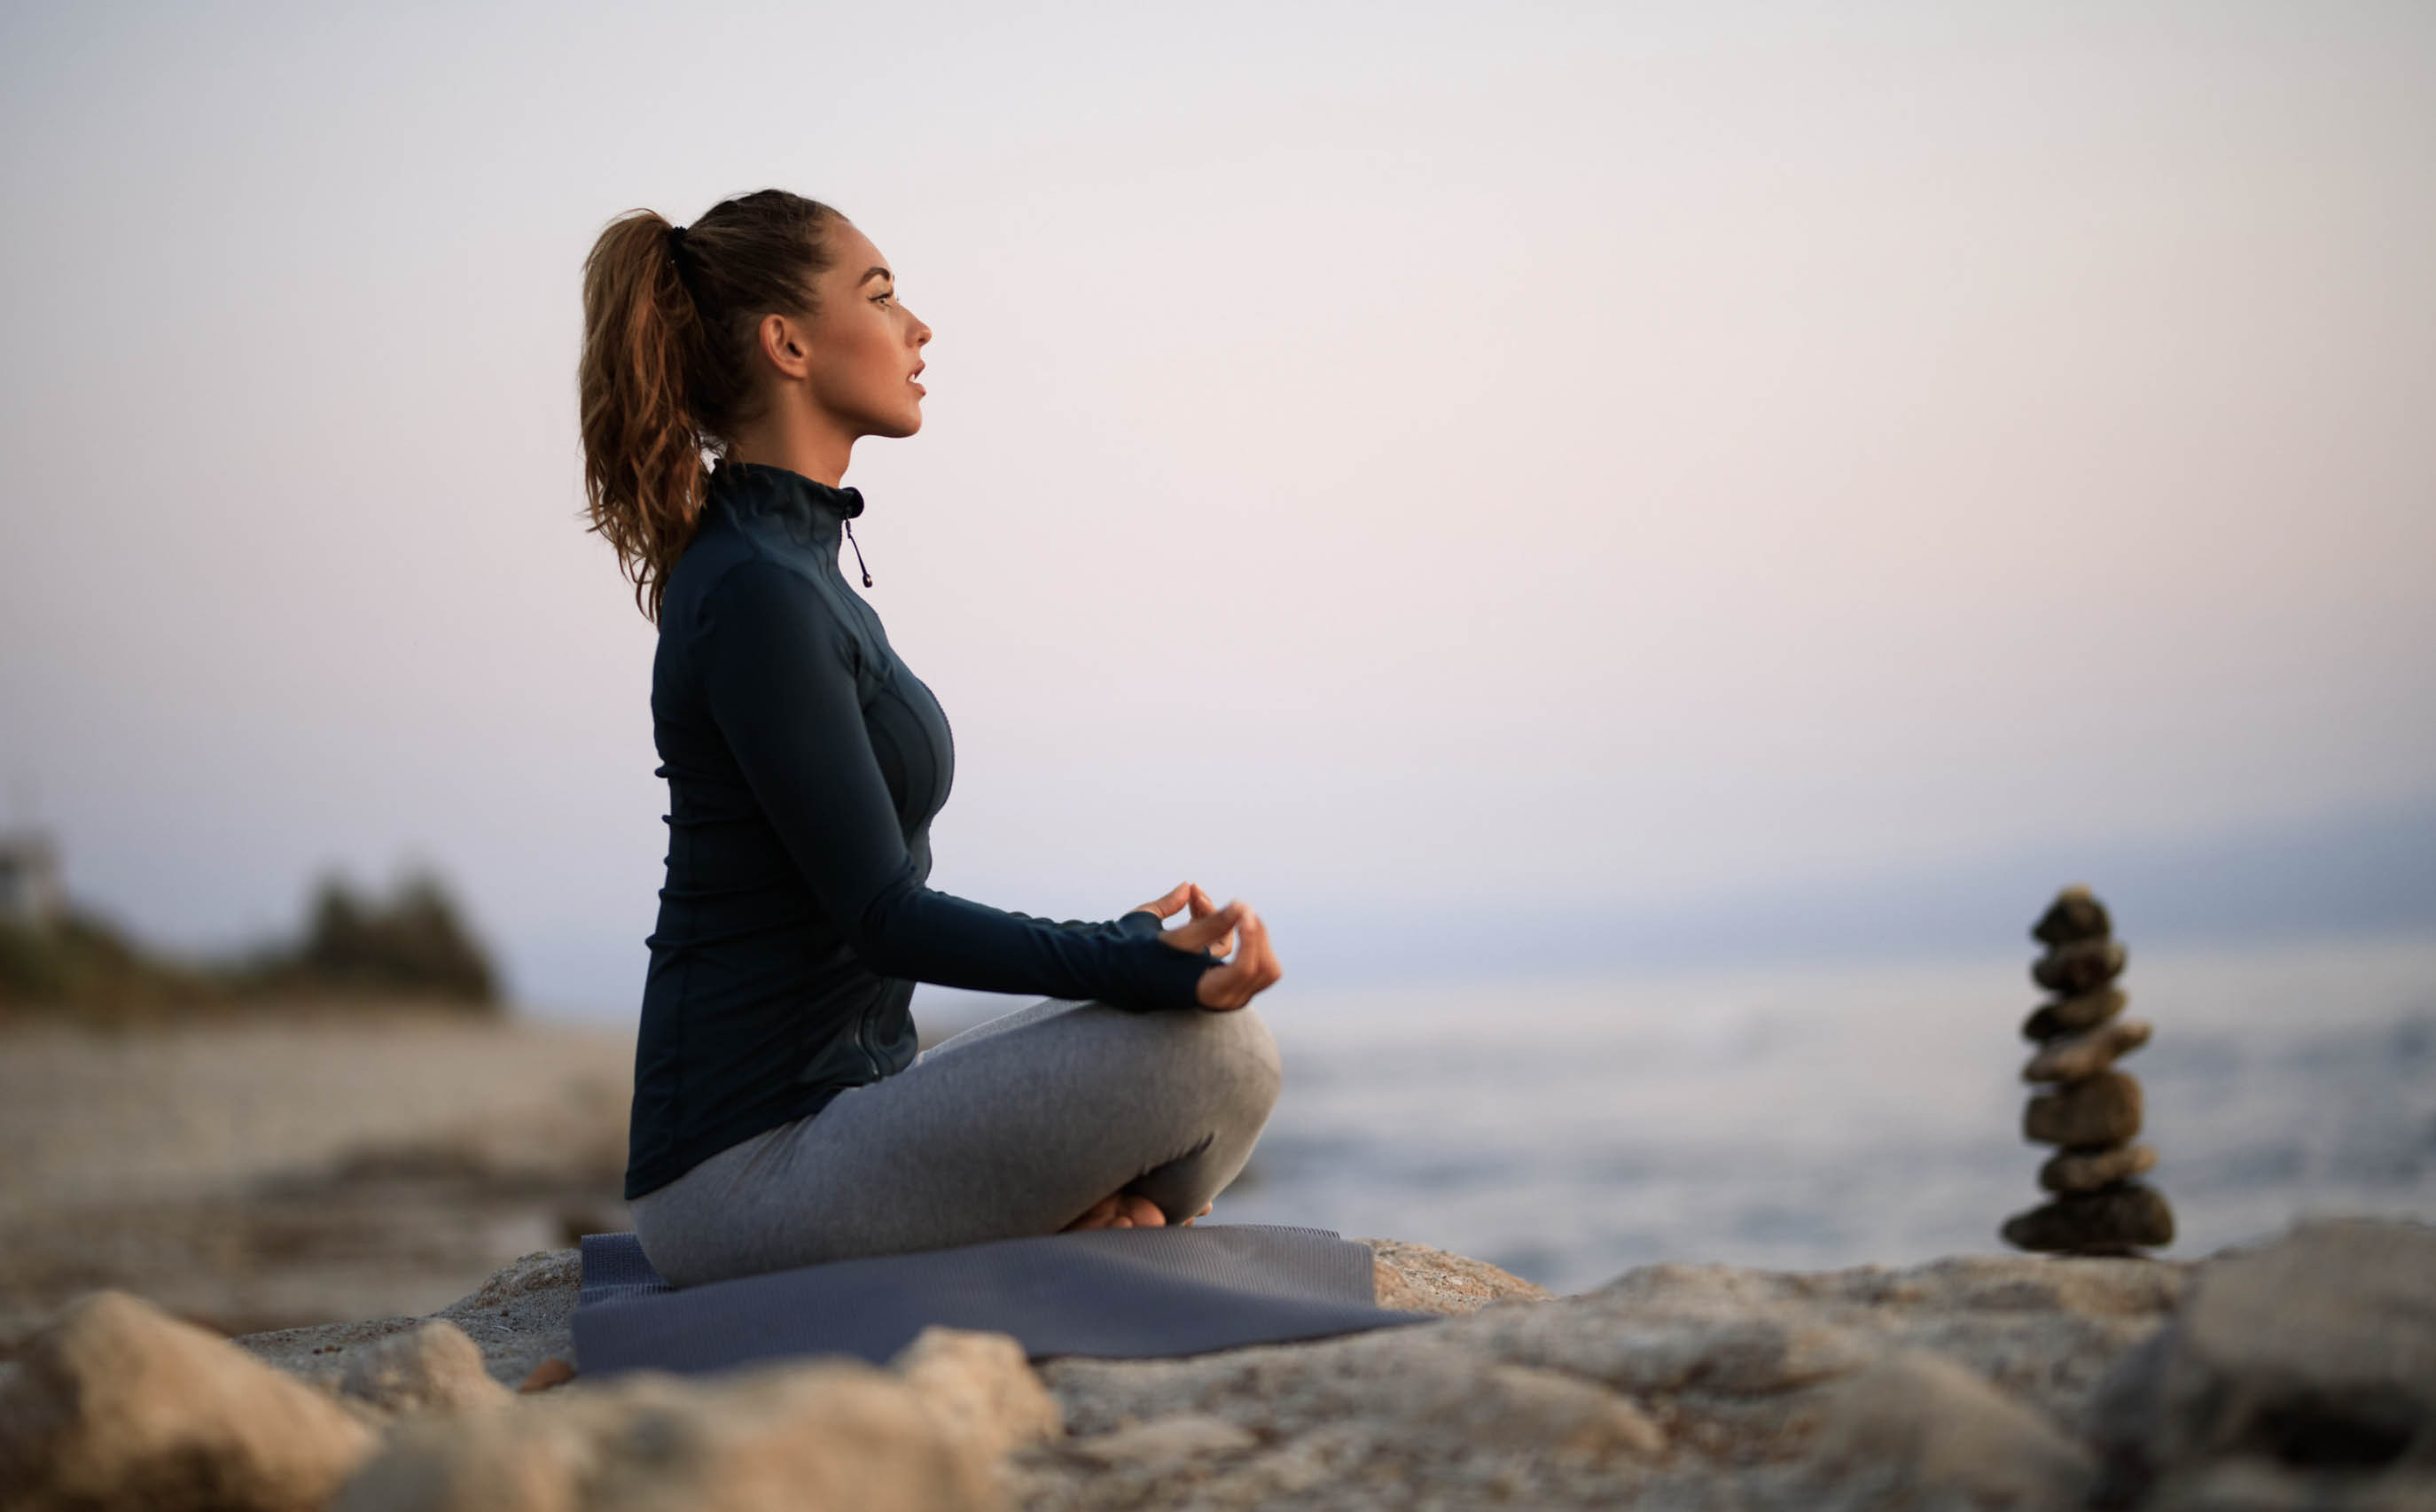 Ujjayi Breathing for Yoga, Meditation and, Better Sleep